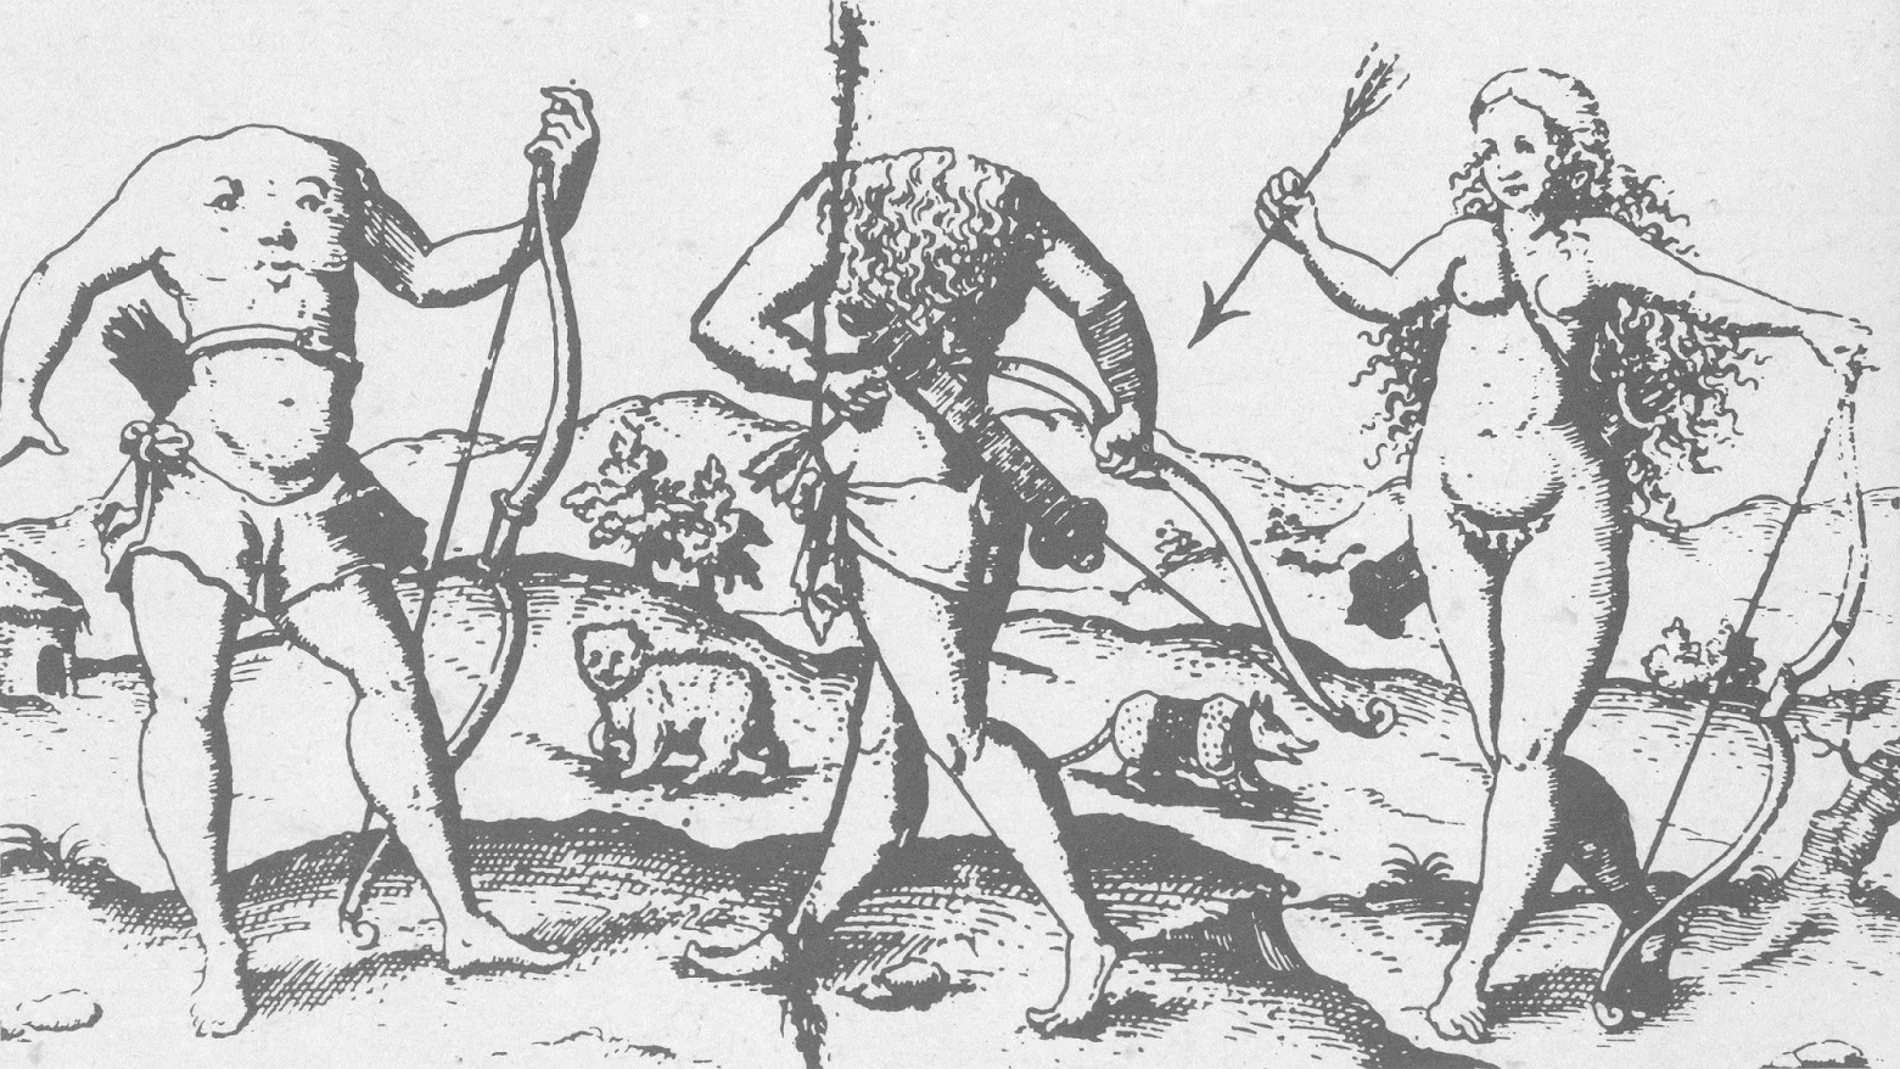 Grabado del siglo XVII de los acéfalos y las amazonas.